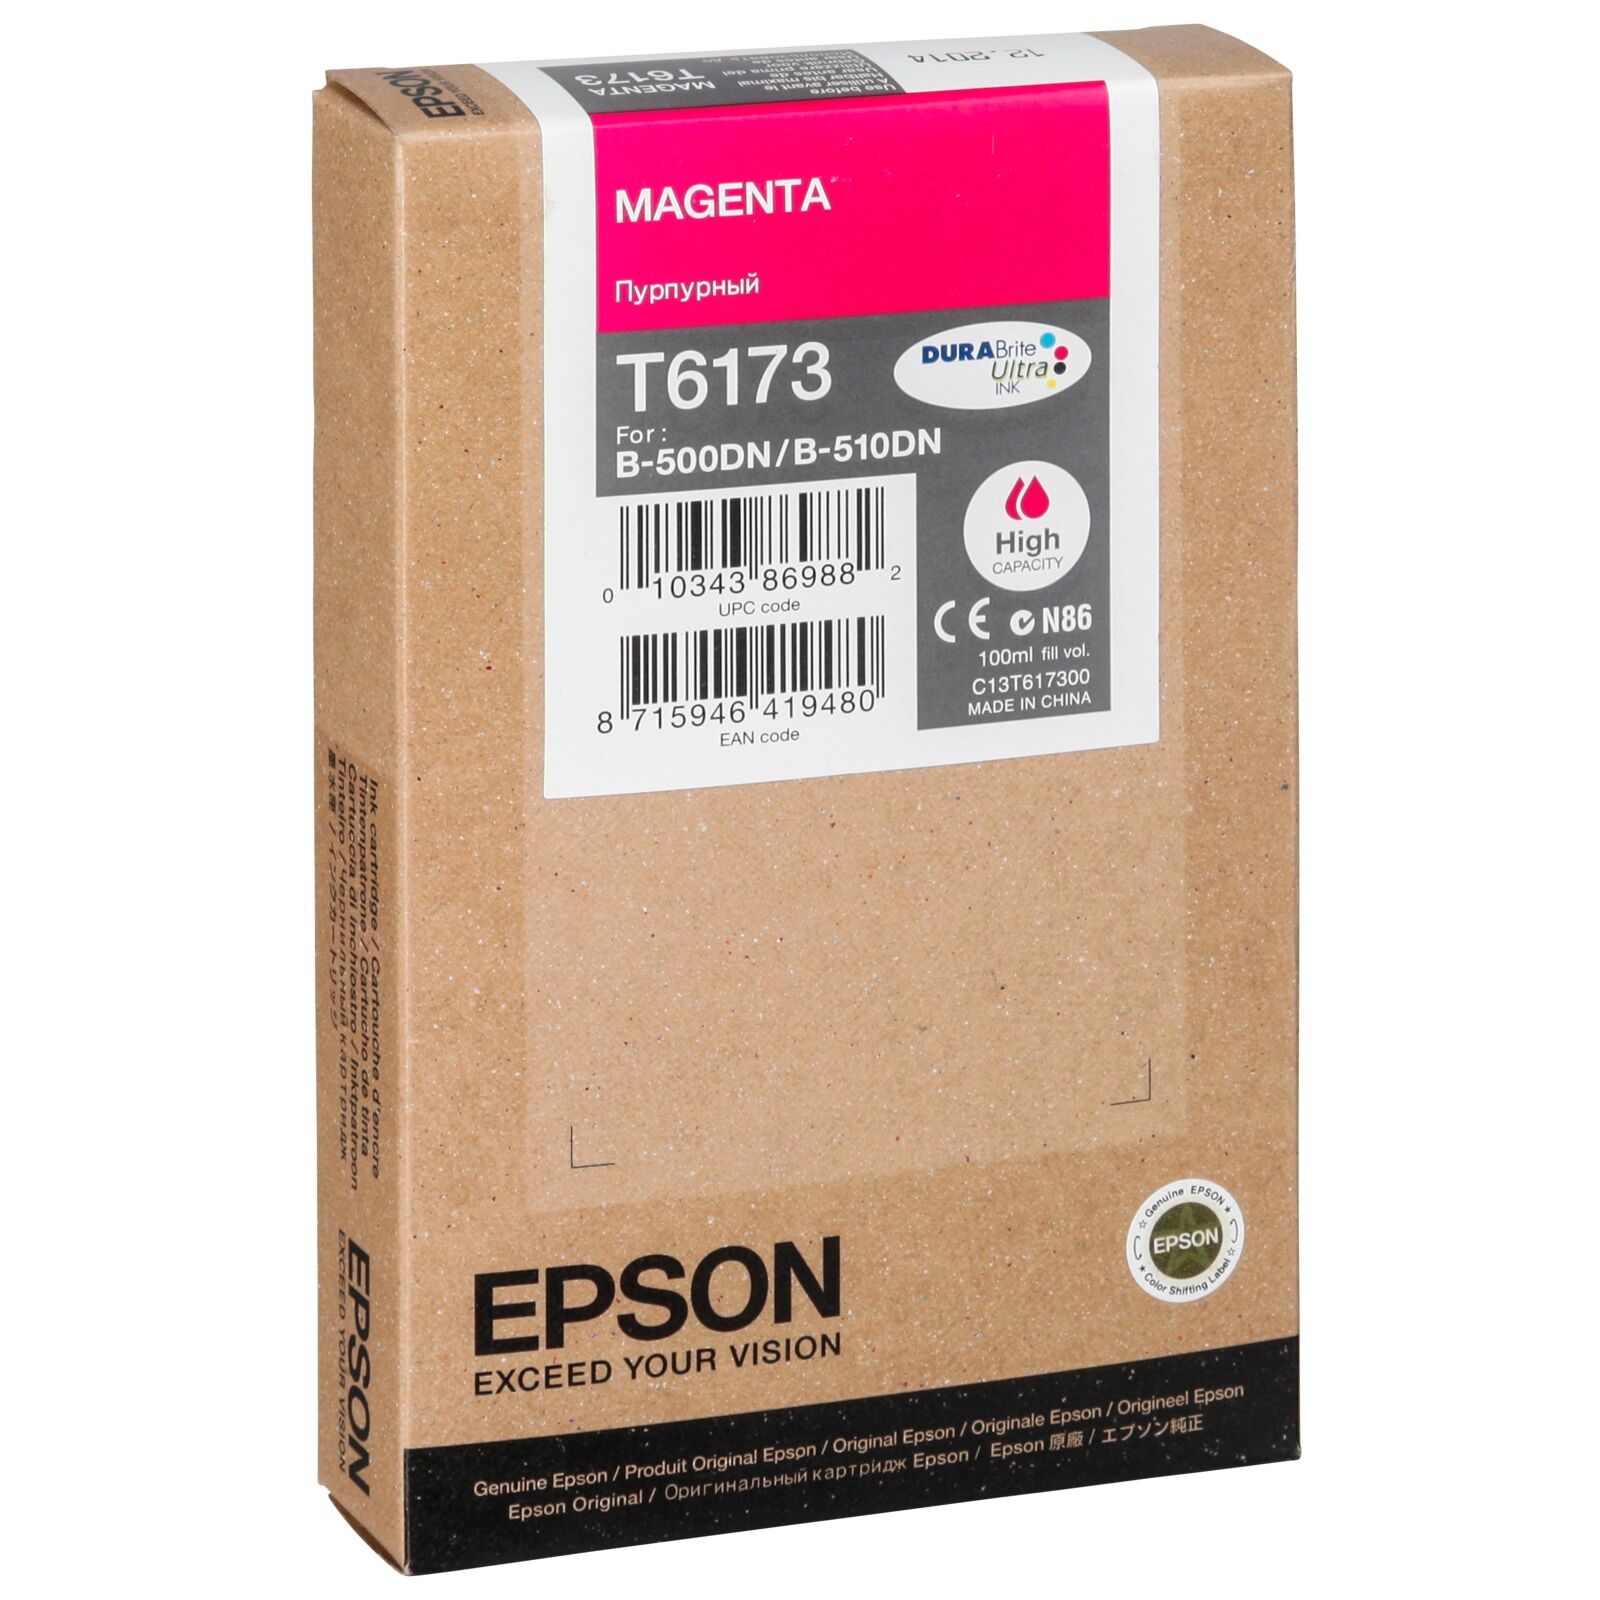 Epson Magenta T617 High Cap. 100 ml T6173